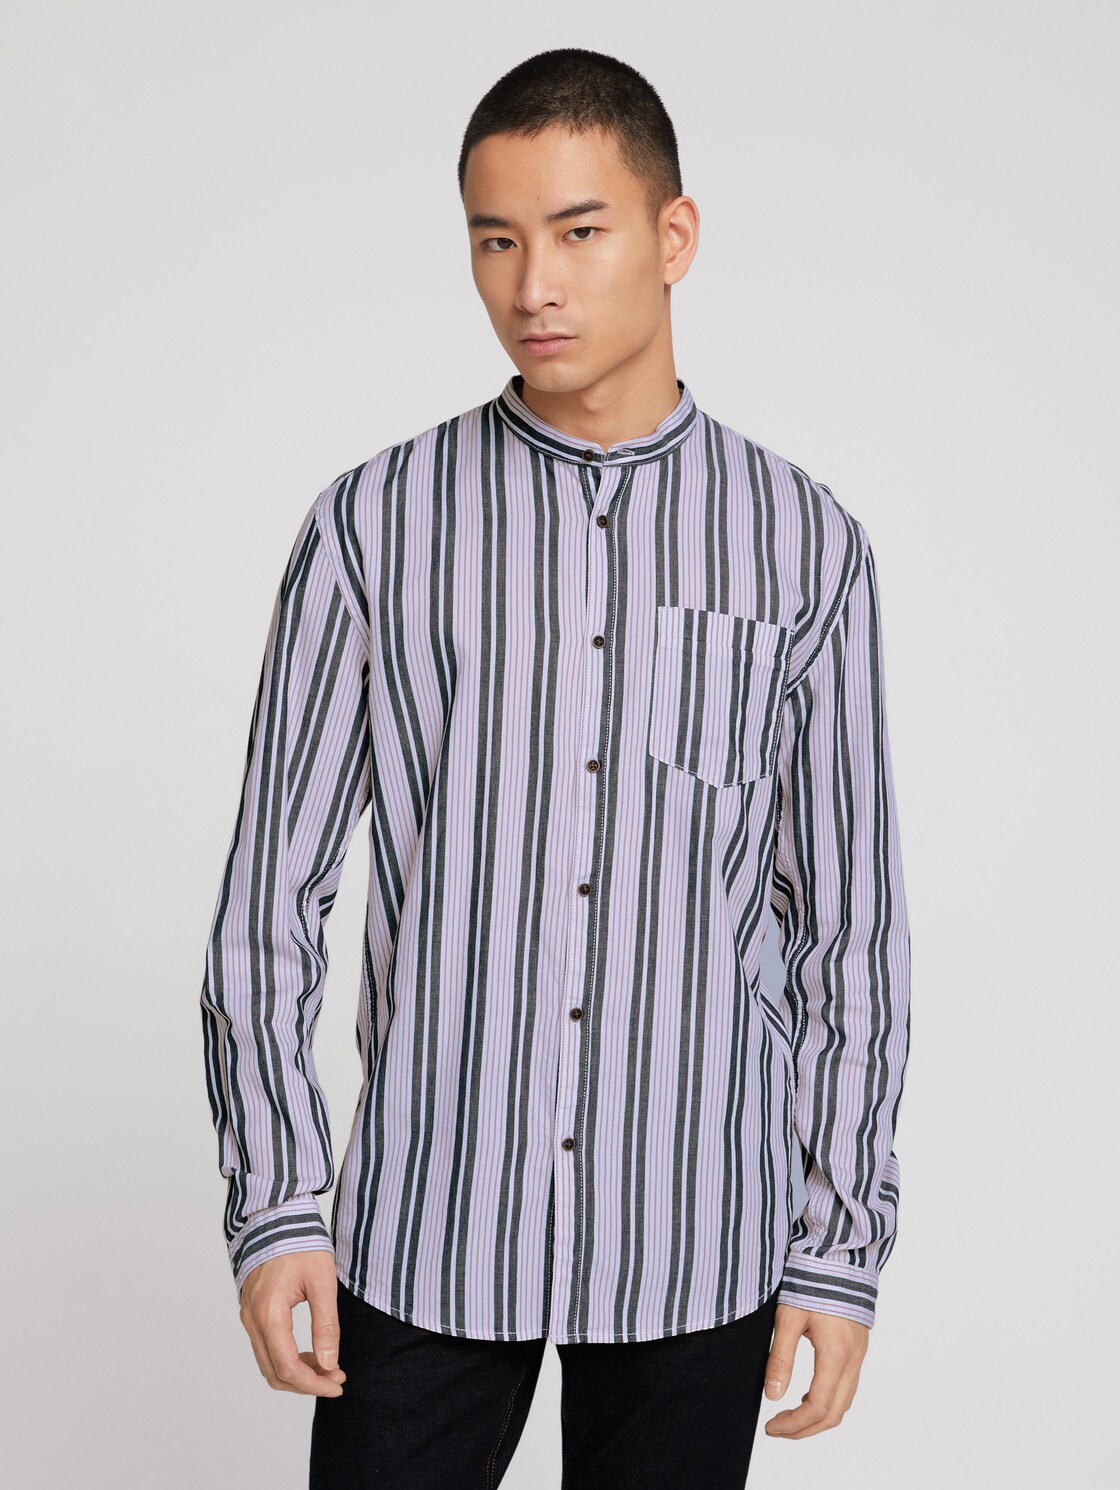 TOM TAILOR DENIM overhemd met patroon en opstaande kraag, navy berry big stripe, S